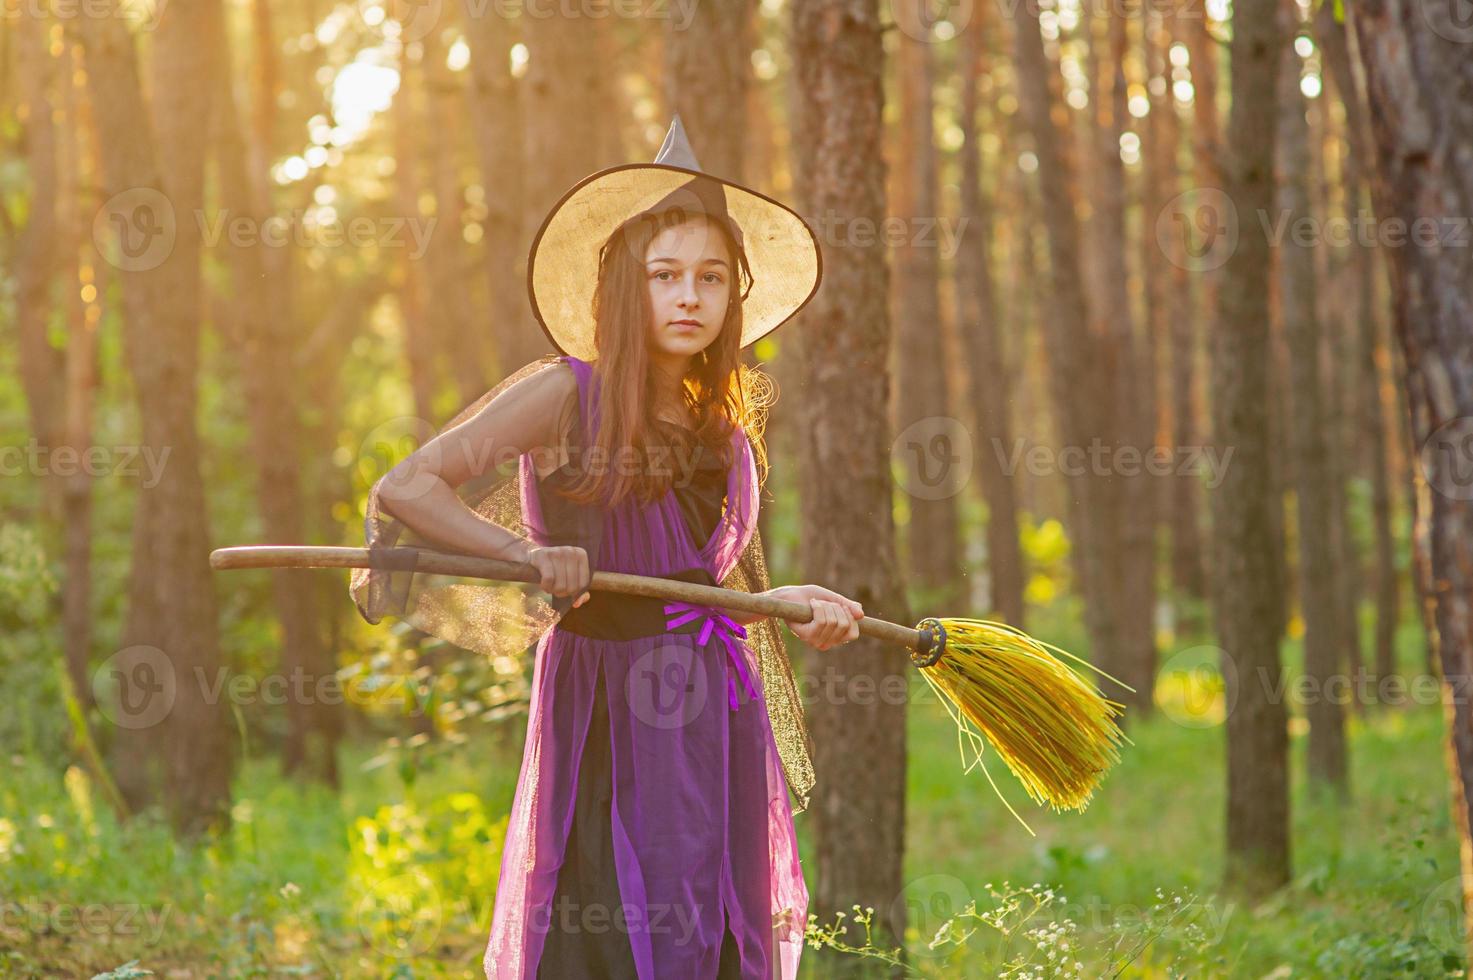 jong meisje in een halloween kostuum in het bos met een bezem. foto